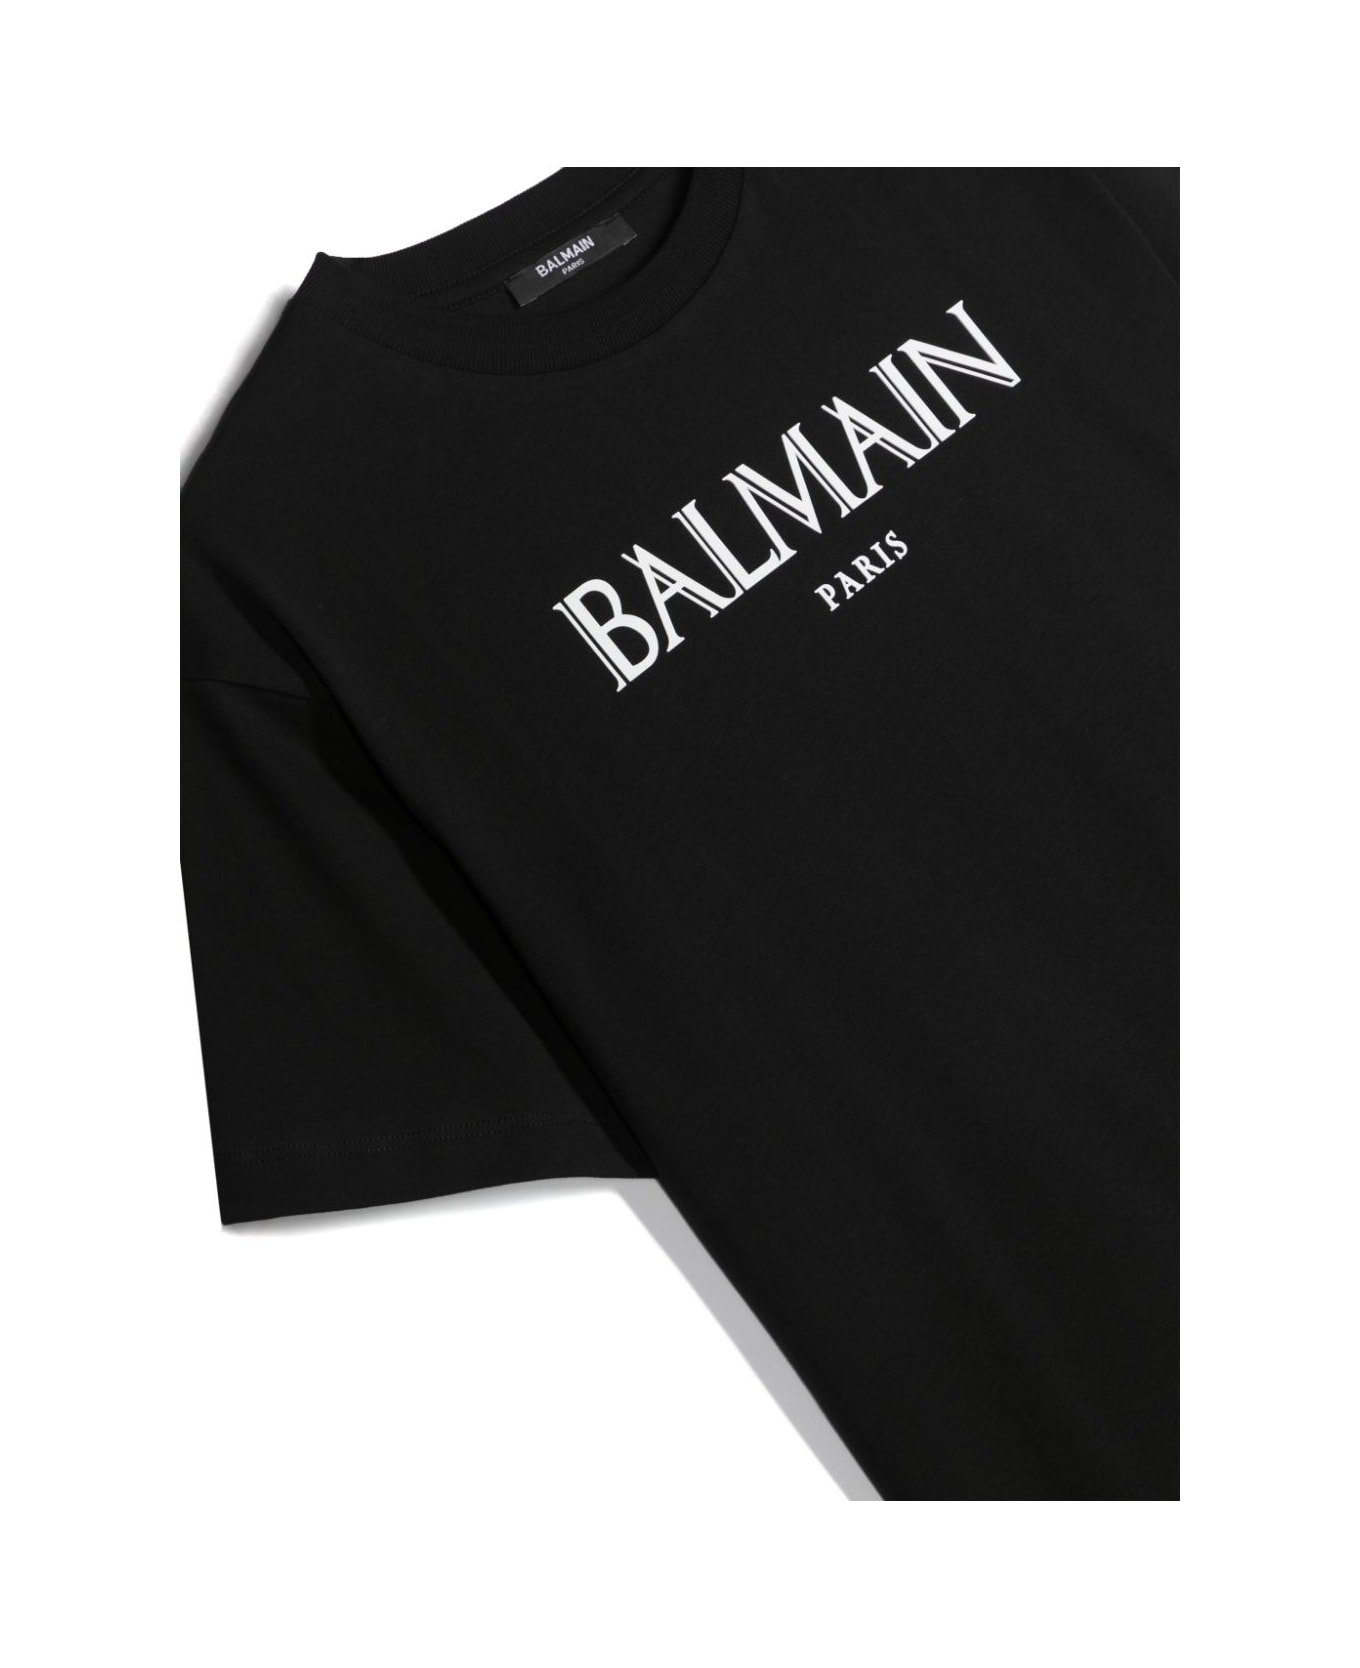 Balmain Printed T-shirt - Bc